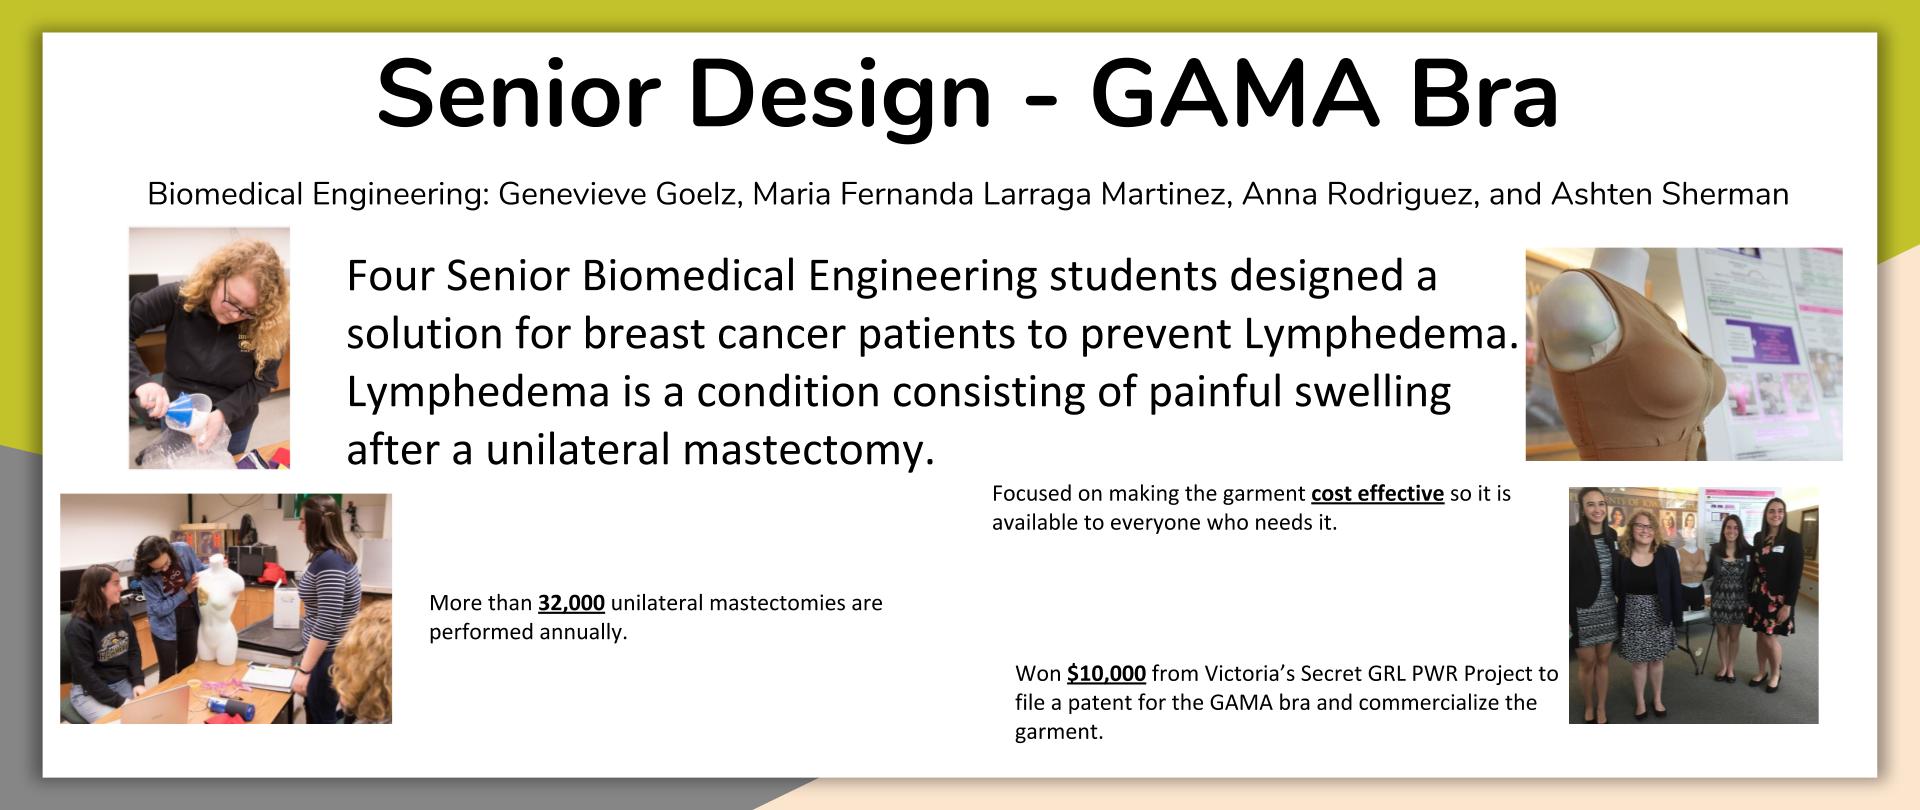 GAMA Bra Senior Design